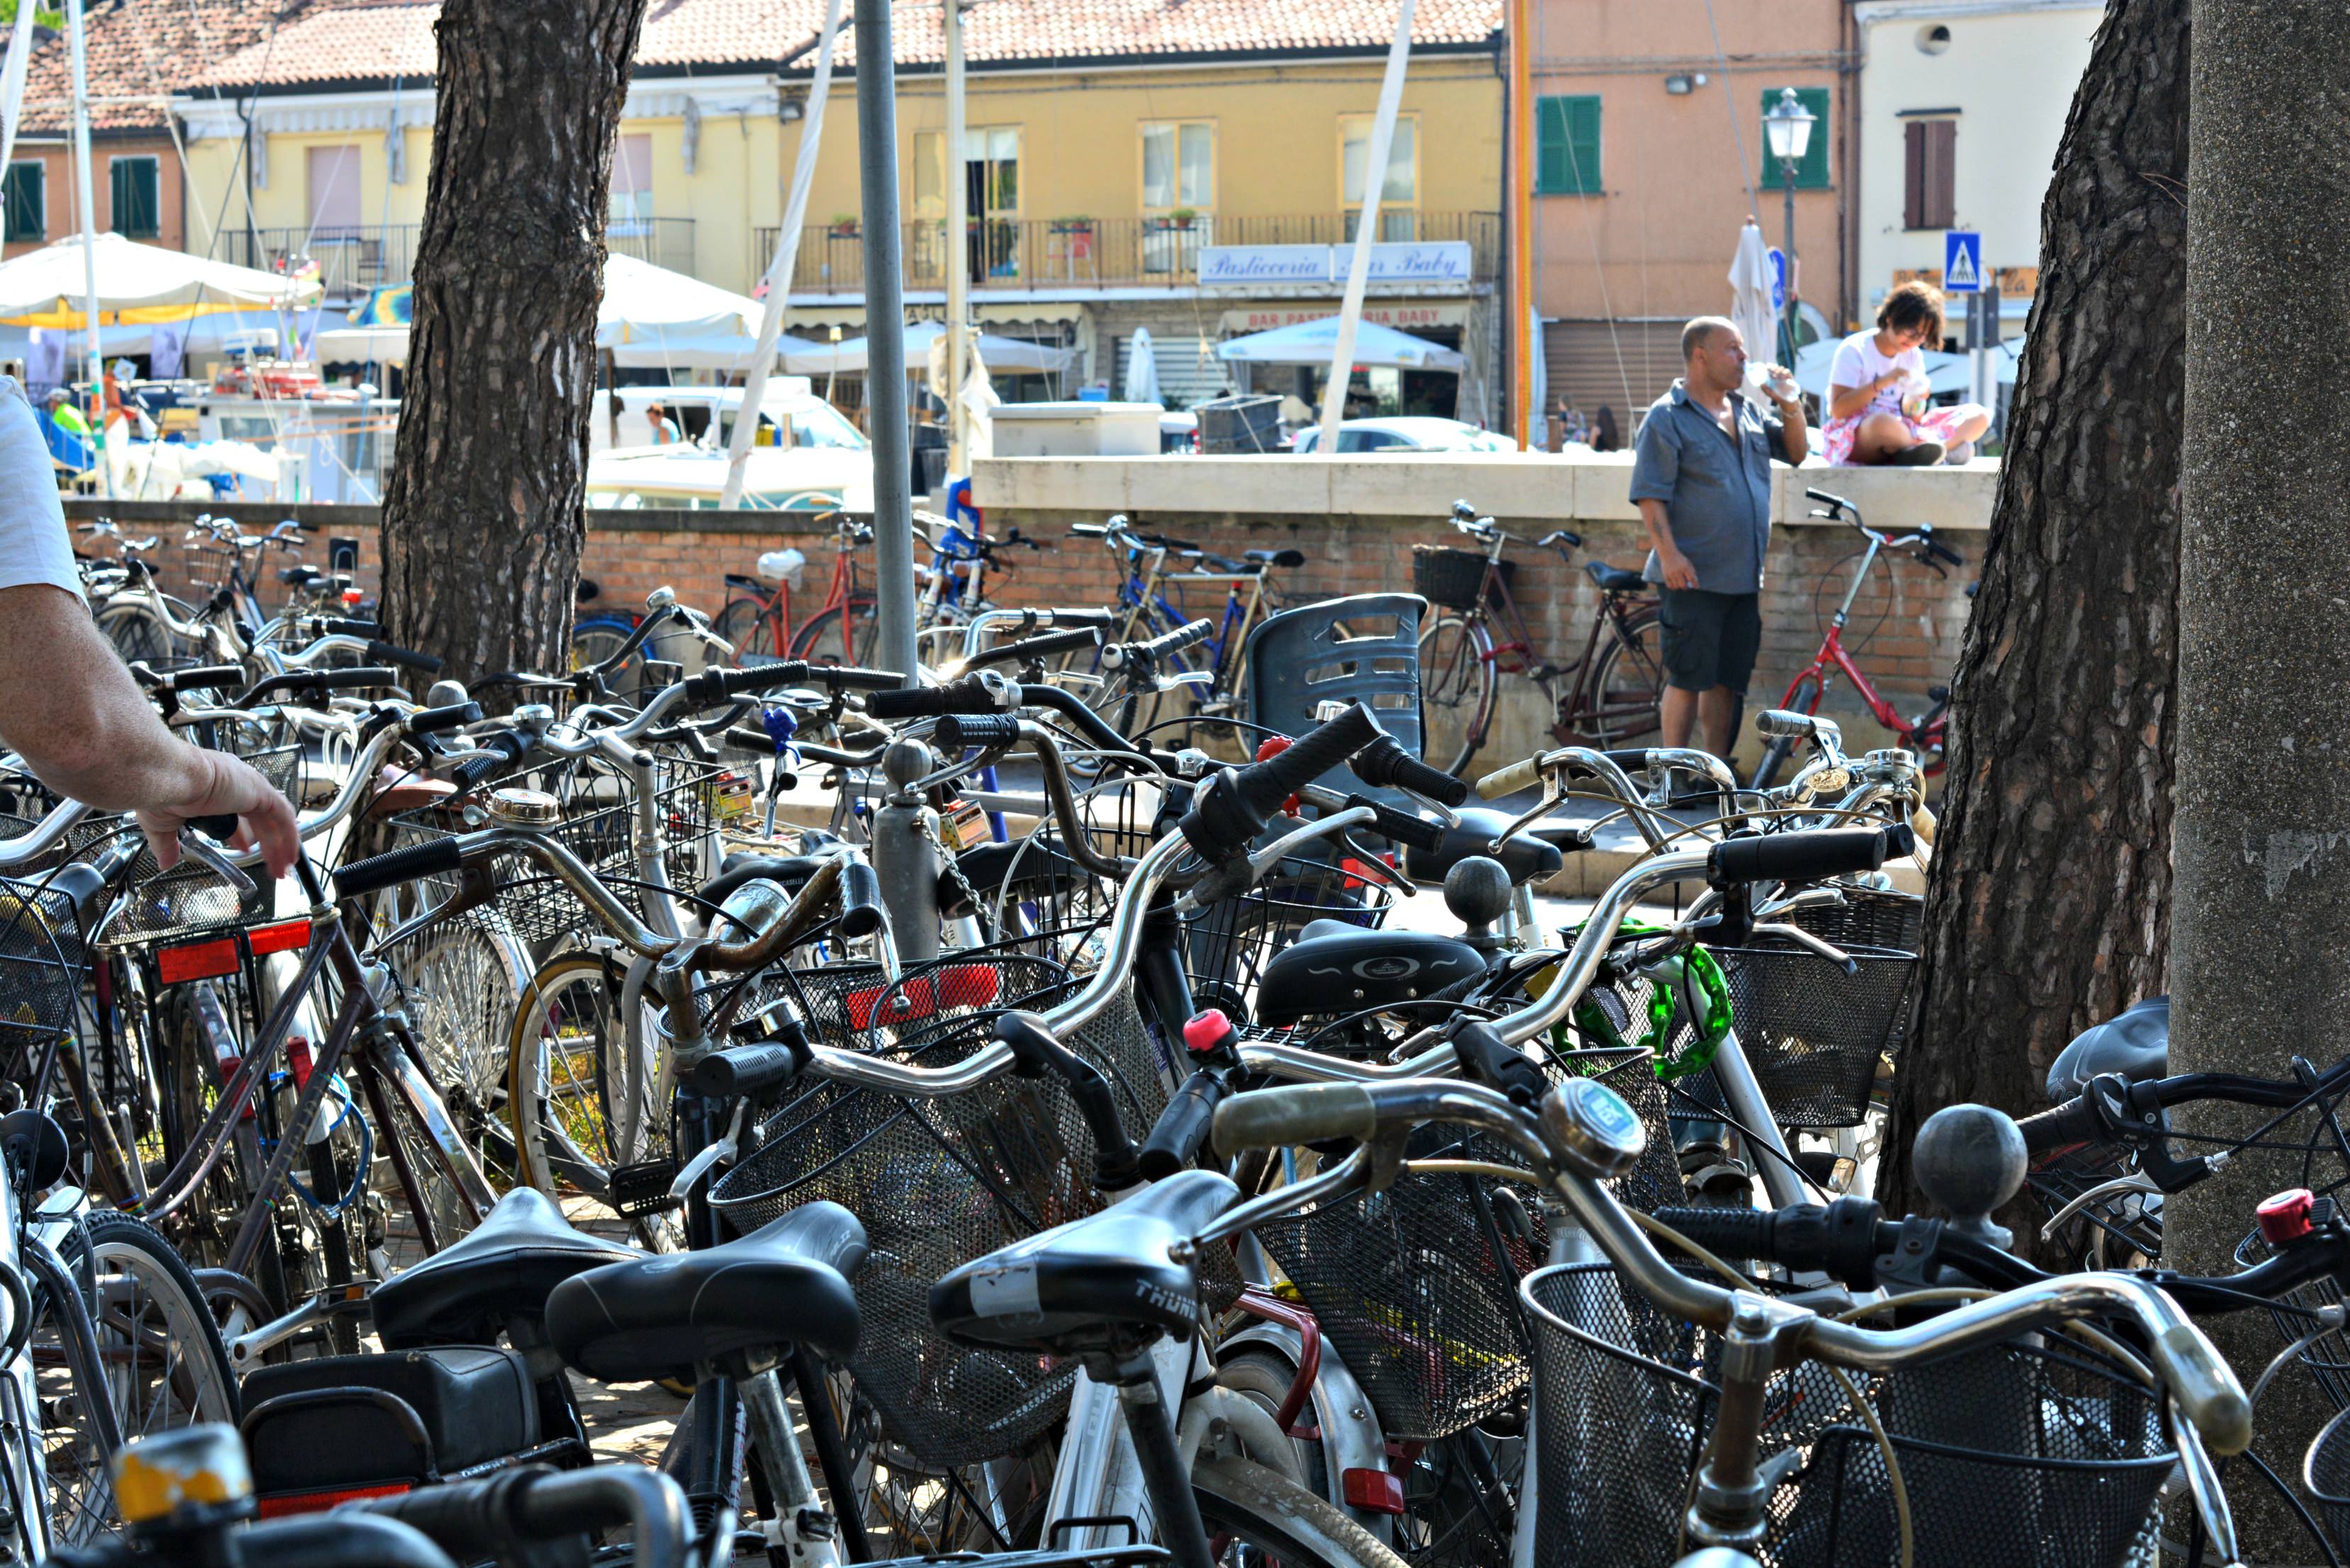 Cervia Ravenna Italy market day sea of bikes